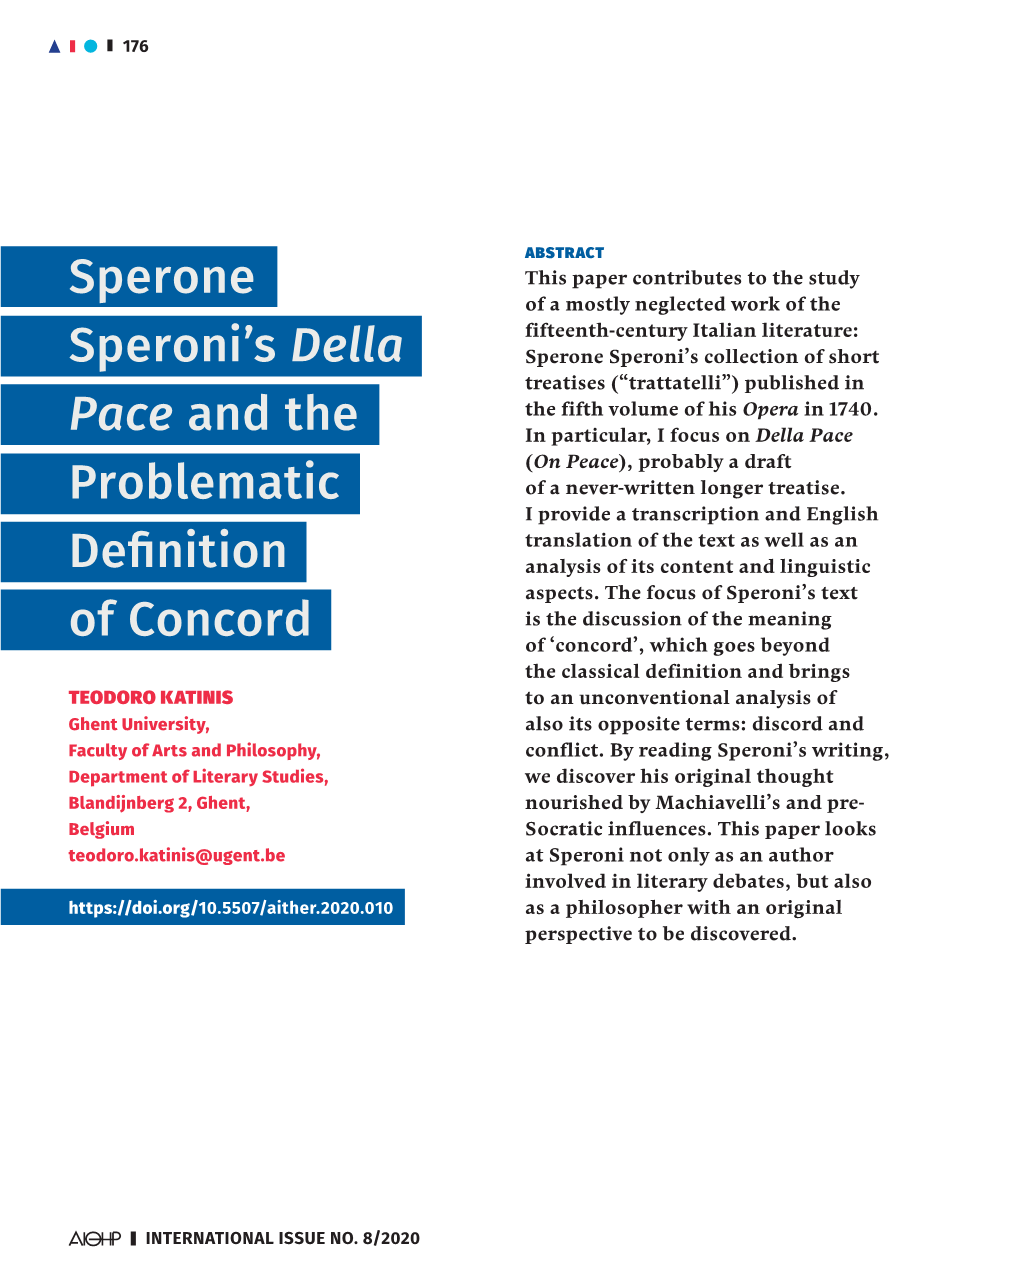 Sperone Speroni's Della Pace and the Problematic